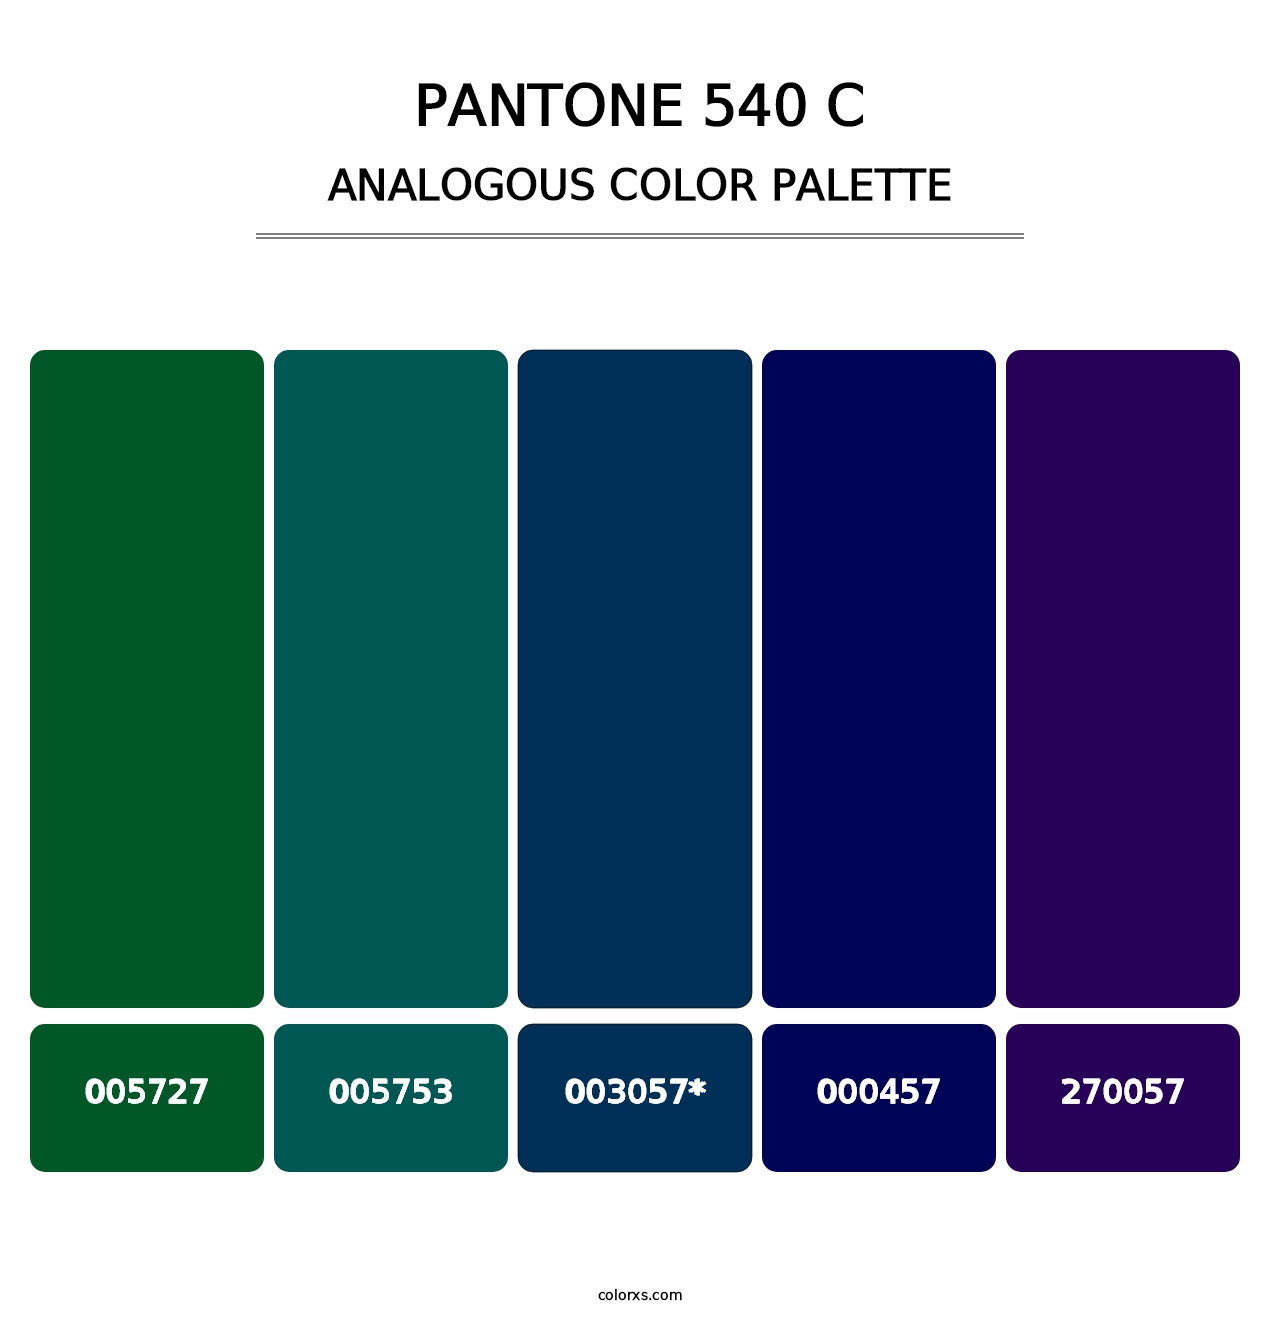 PANTONE 540 C - Analogous Color Palette